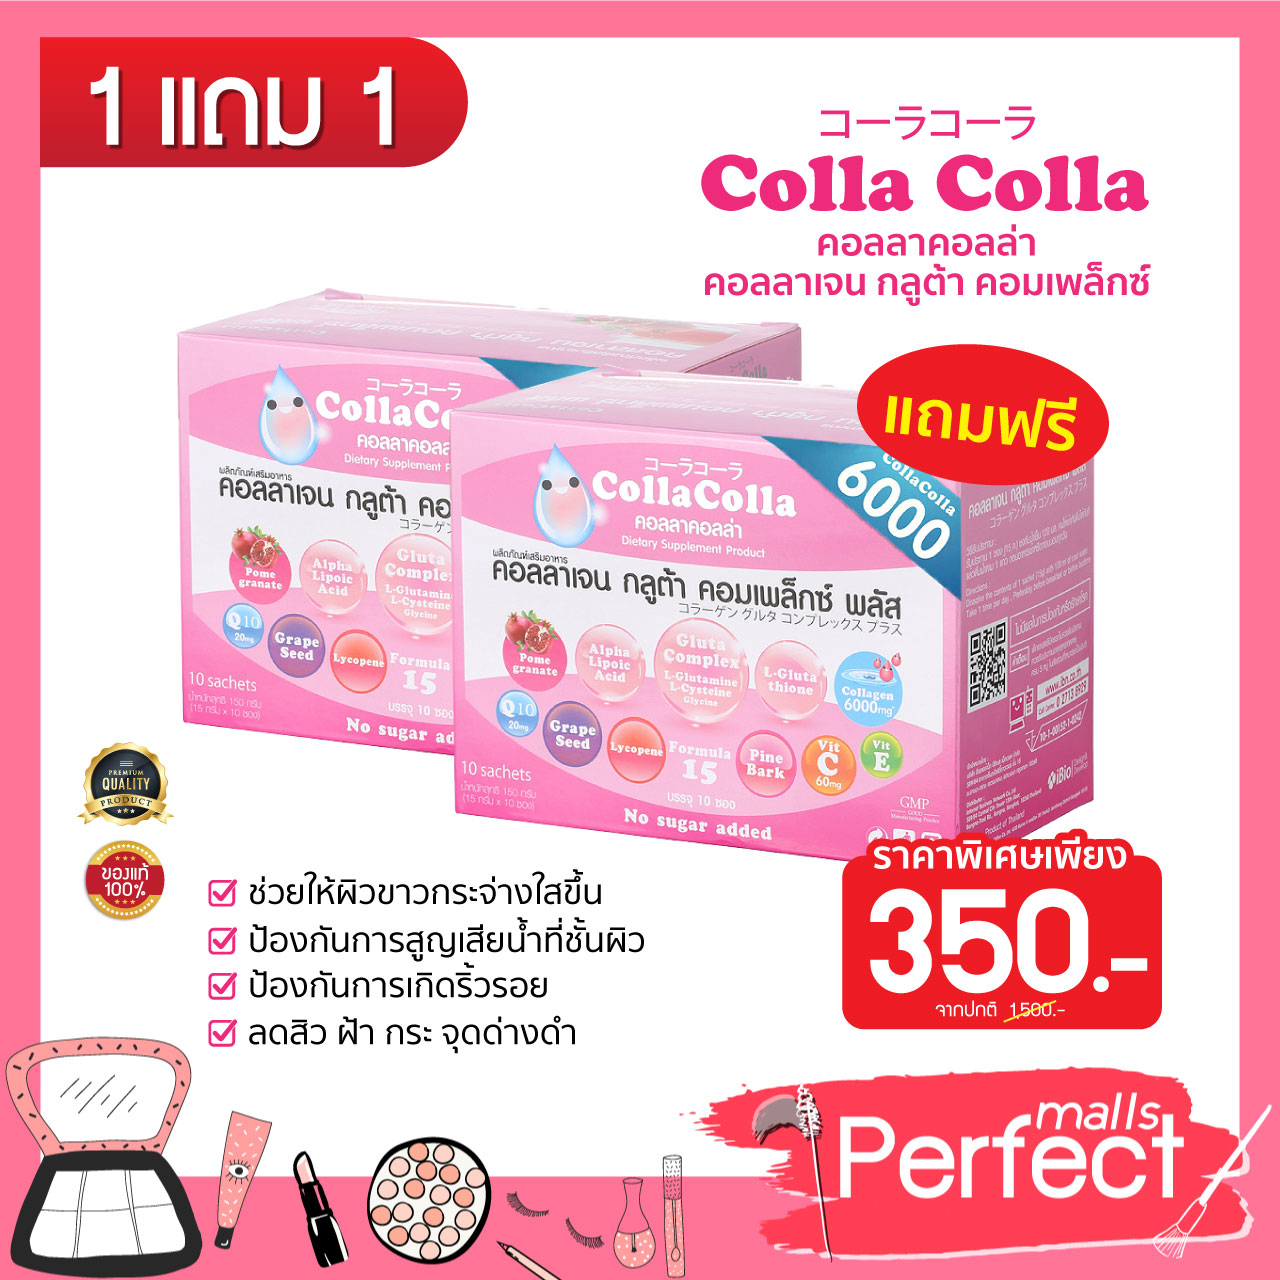 ซื้อ 1 แถม 1 ลดราคา CollaColla Collagen Gluta  6,000 mg. คอลลาเจนกลูต้  ช่วยบำรุงผิวขาว   ผิวใสเด้ง ลดเลือนริ้วรอย ความหมองคล้ำ